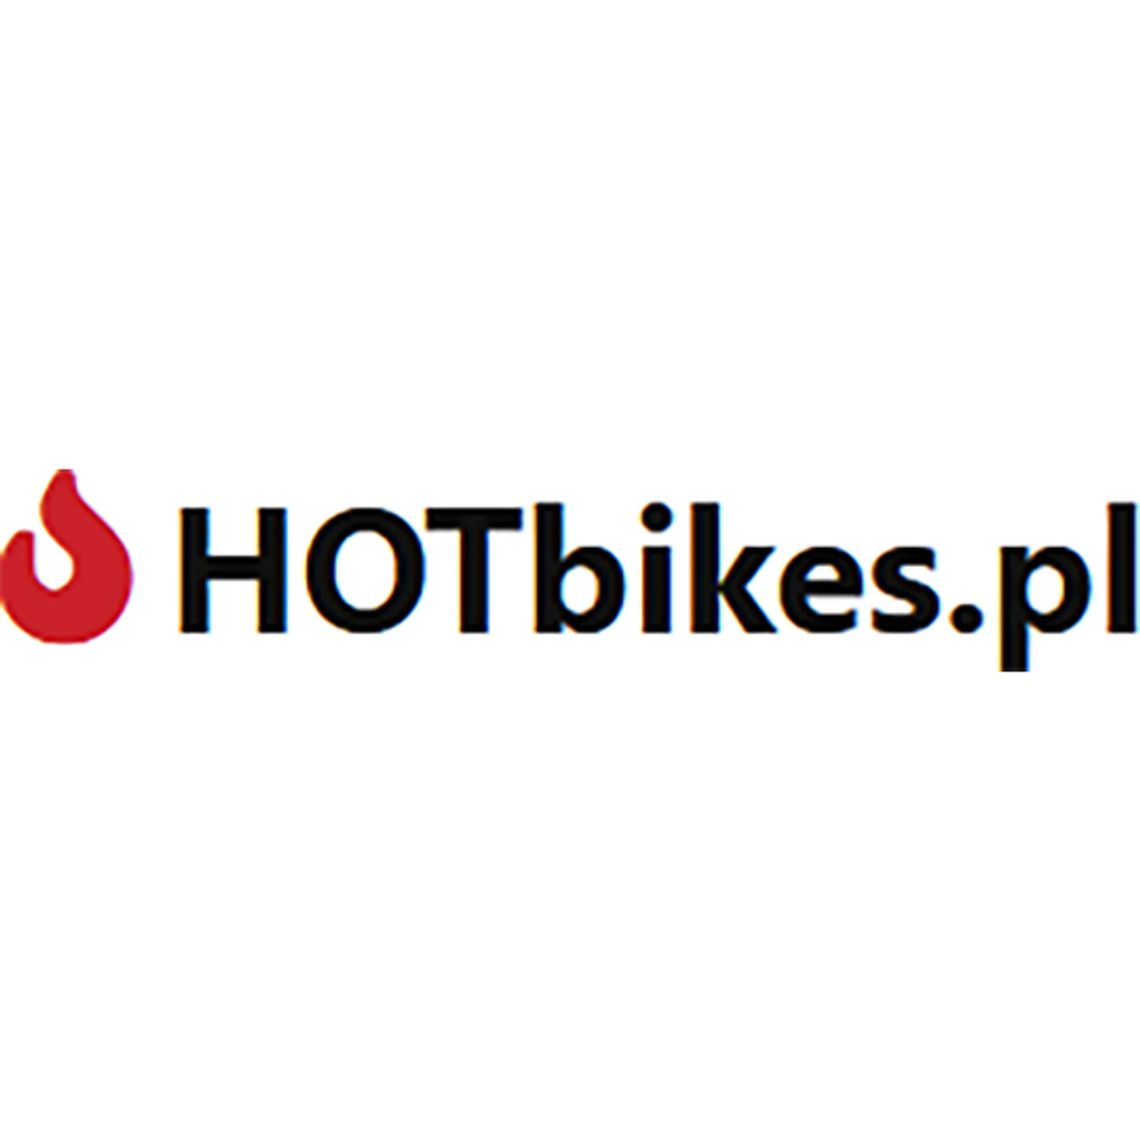 HotBikes.pl - Najlepsze okazje rowerowe